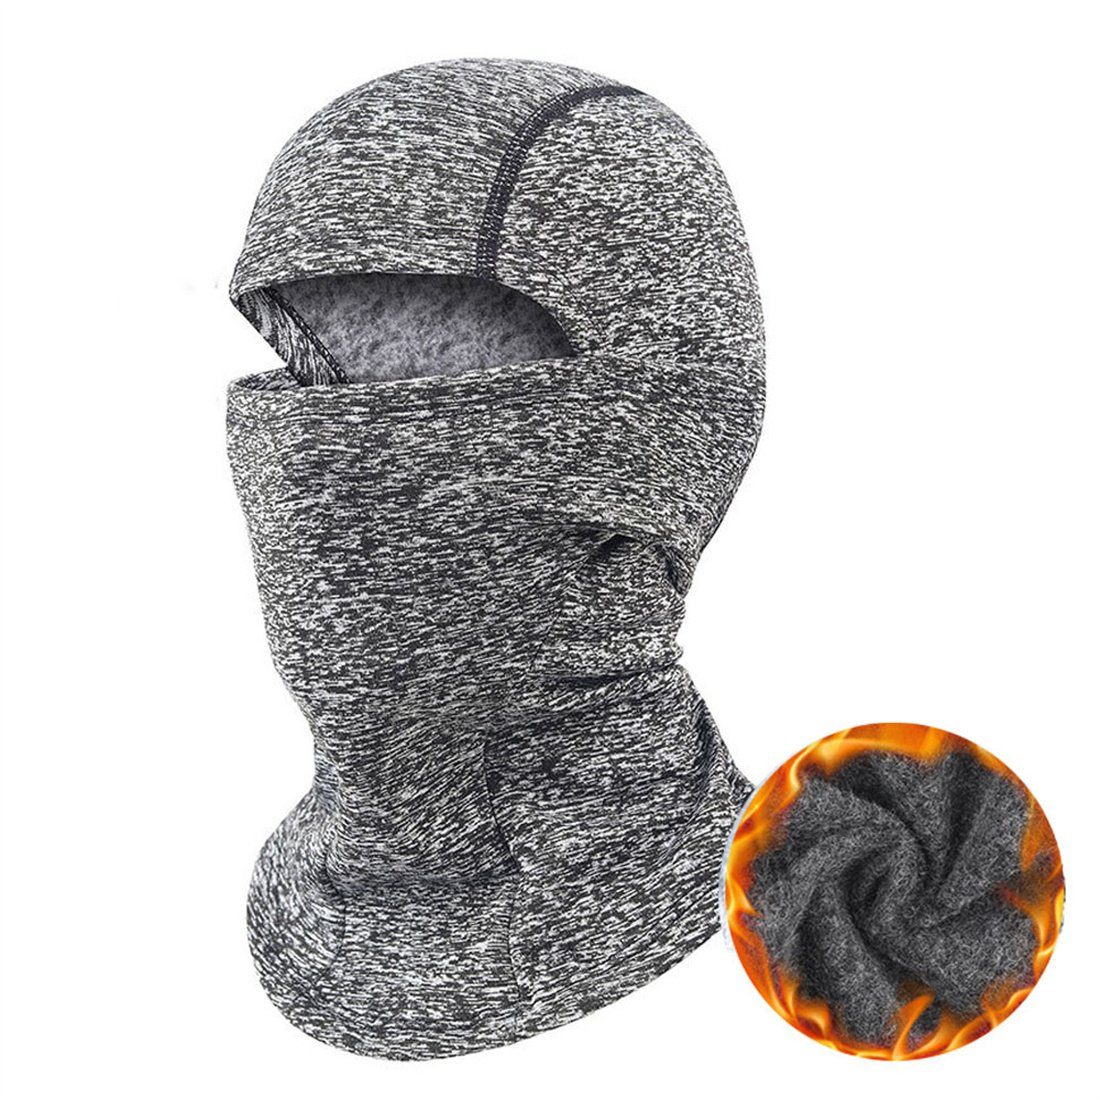 DÖRÖY Sturmhaube Warme Maske für den Outdoor-Reitsport, Sport-Kopfbedeckung mit Puffer dunkelgrau